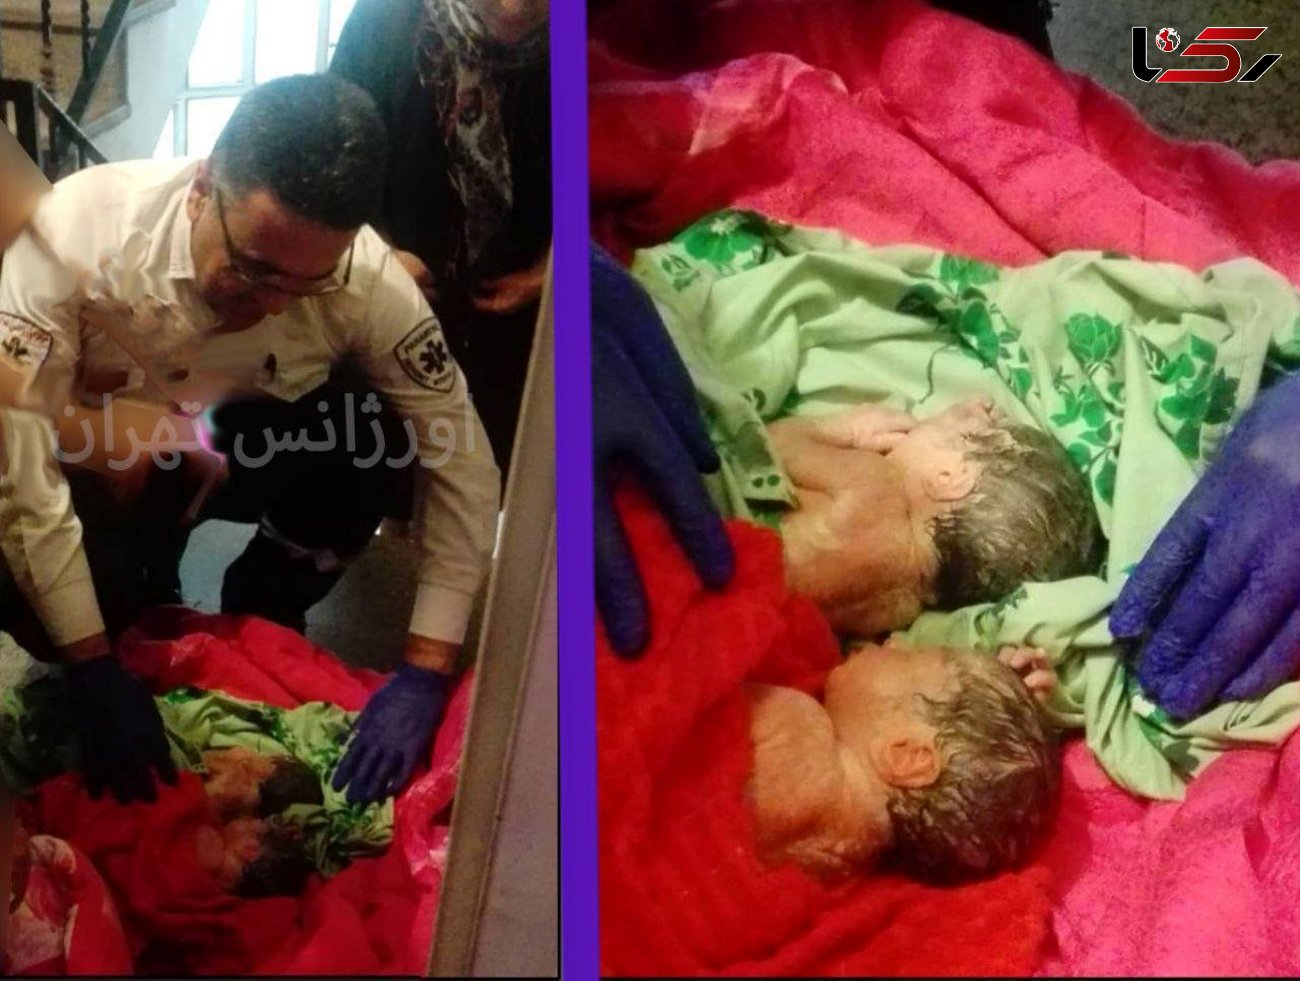 تولد دوقلوهای پسر در آمبولانس تهران